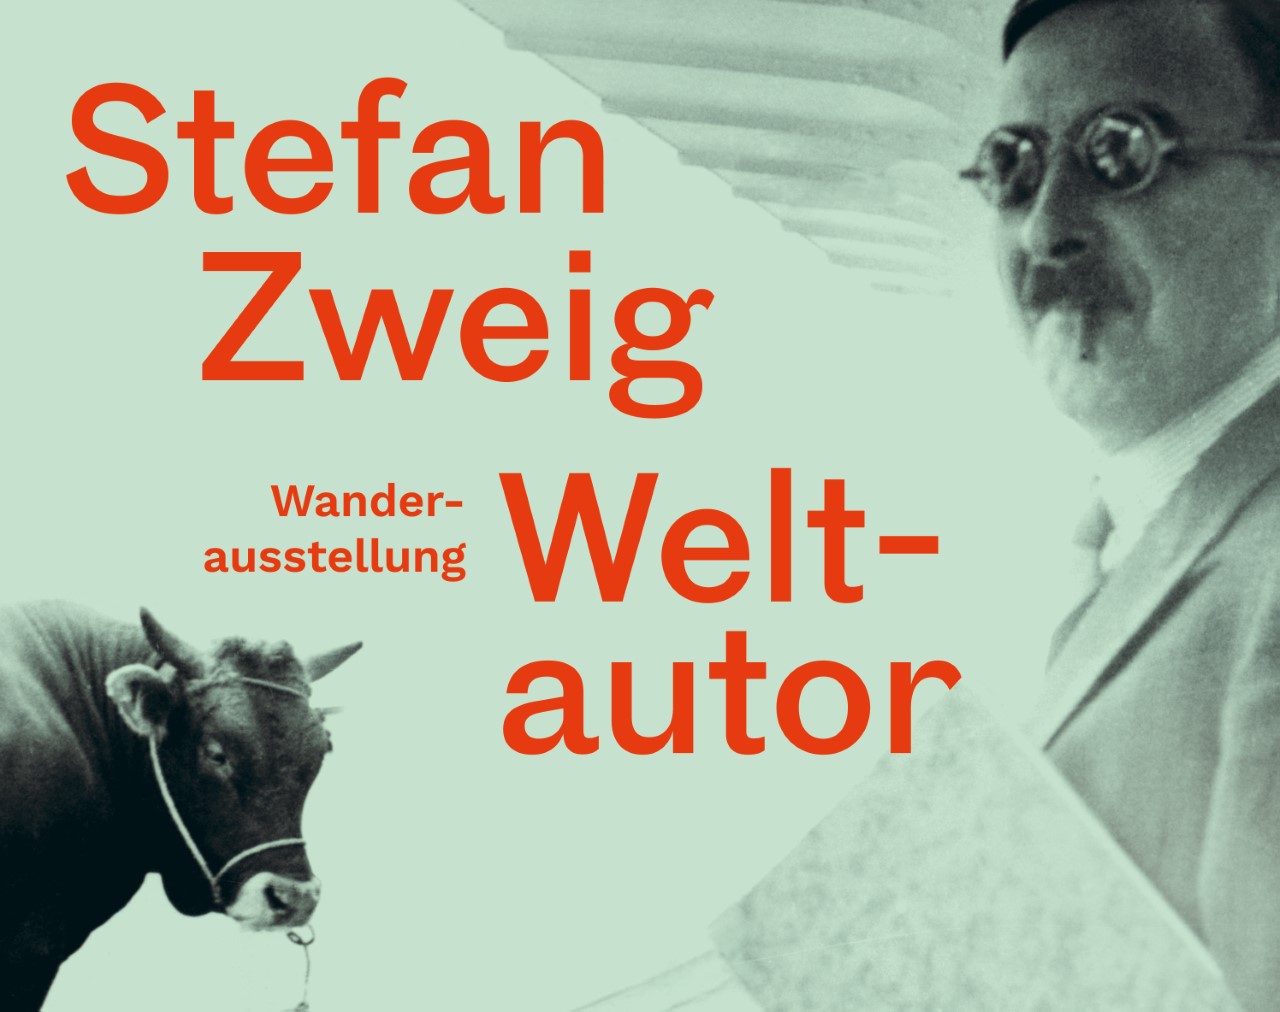 Grünliches Foto von Mann mit Stier, darauf Text in Rot: Stefan Zwei Weltautor. Wanderausstellung"